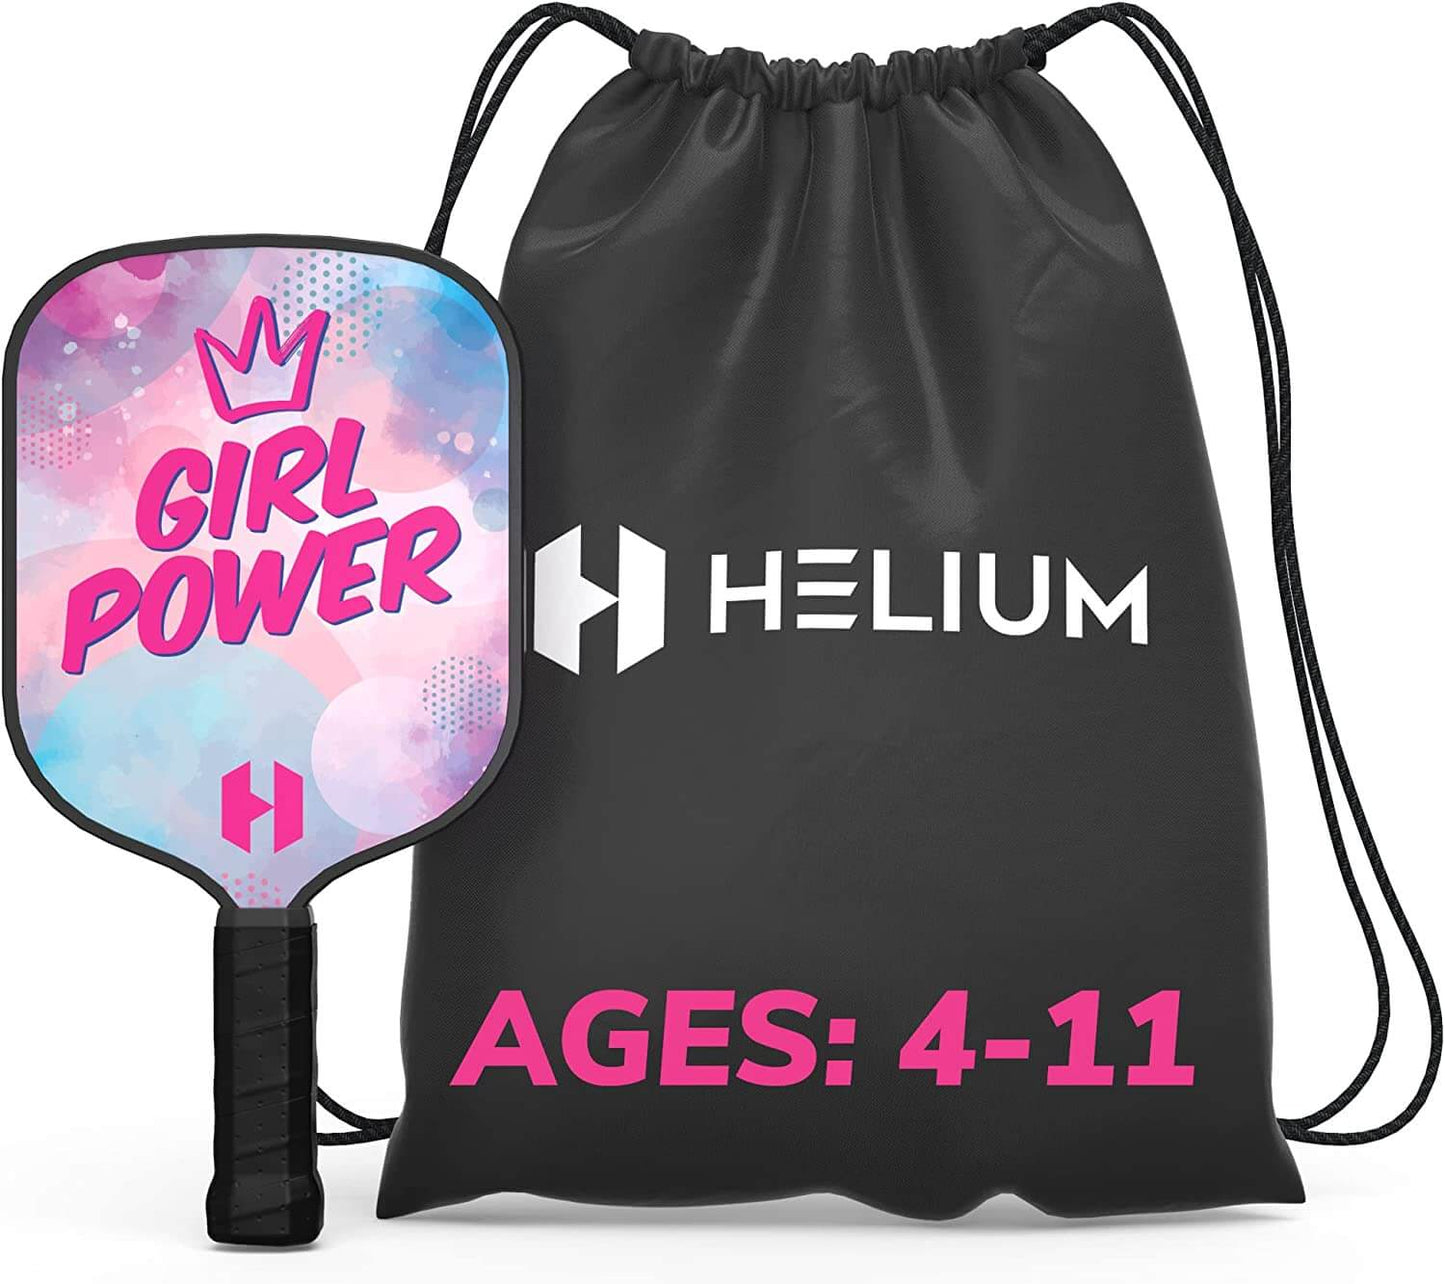 Helium Junior Pickleball Paddle Set - 1 Pack - Girl Power